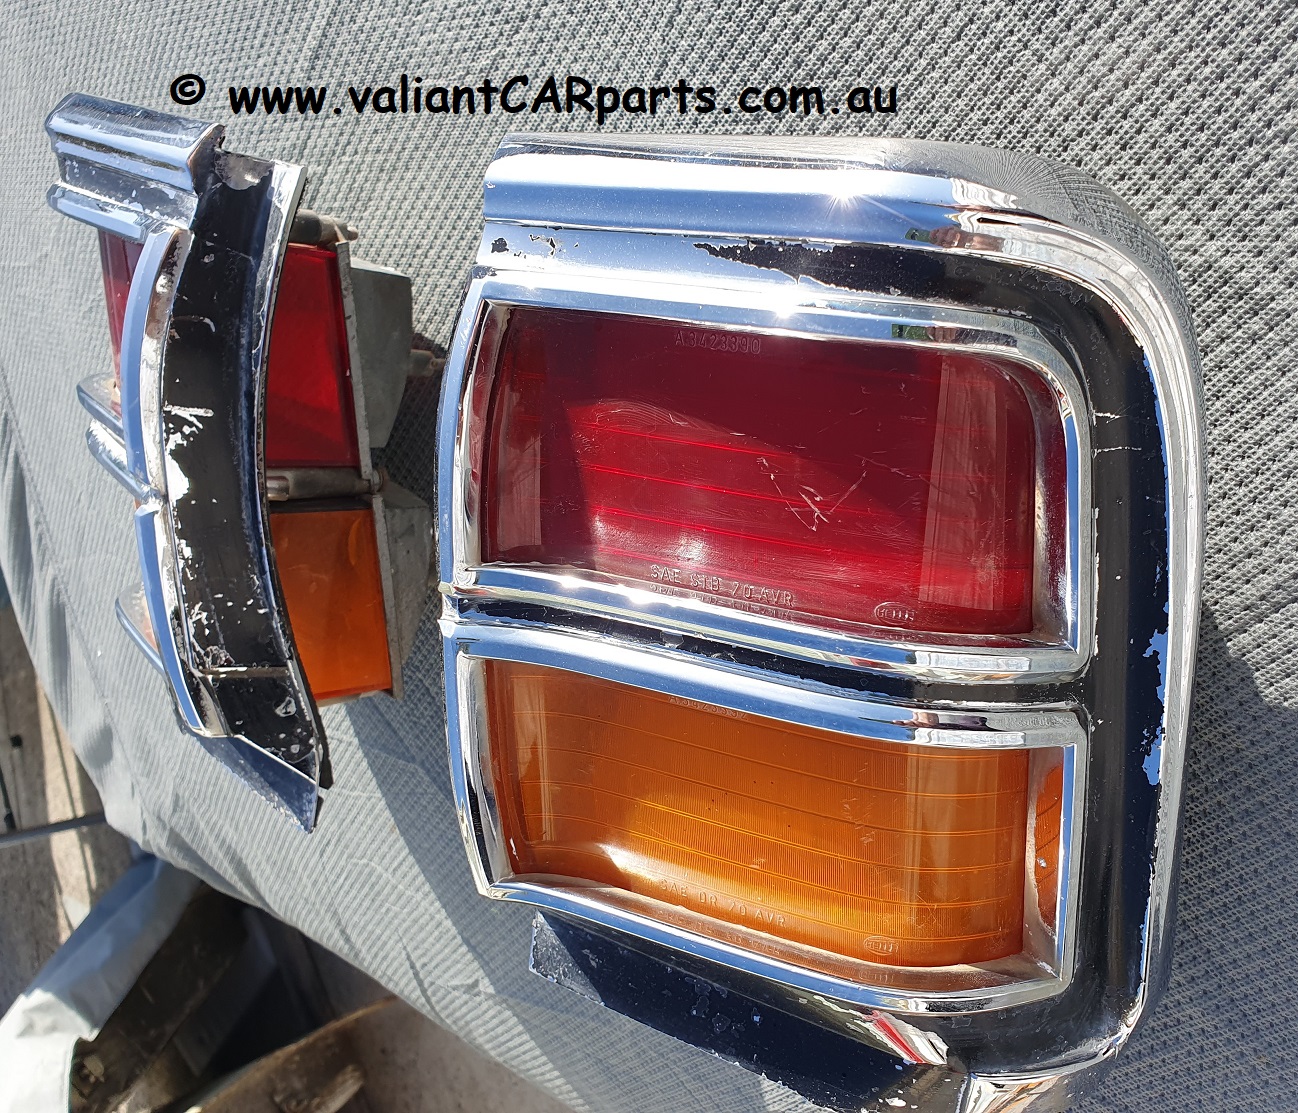 Chrysler_valiant_VG_Tailight_assembiles_pair_1970_1971_(4)